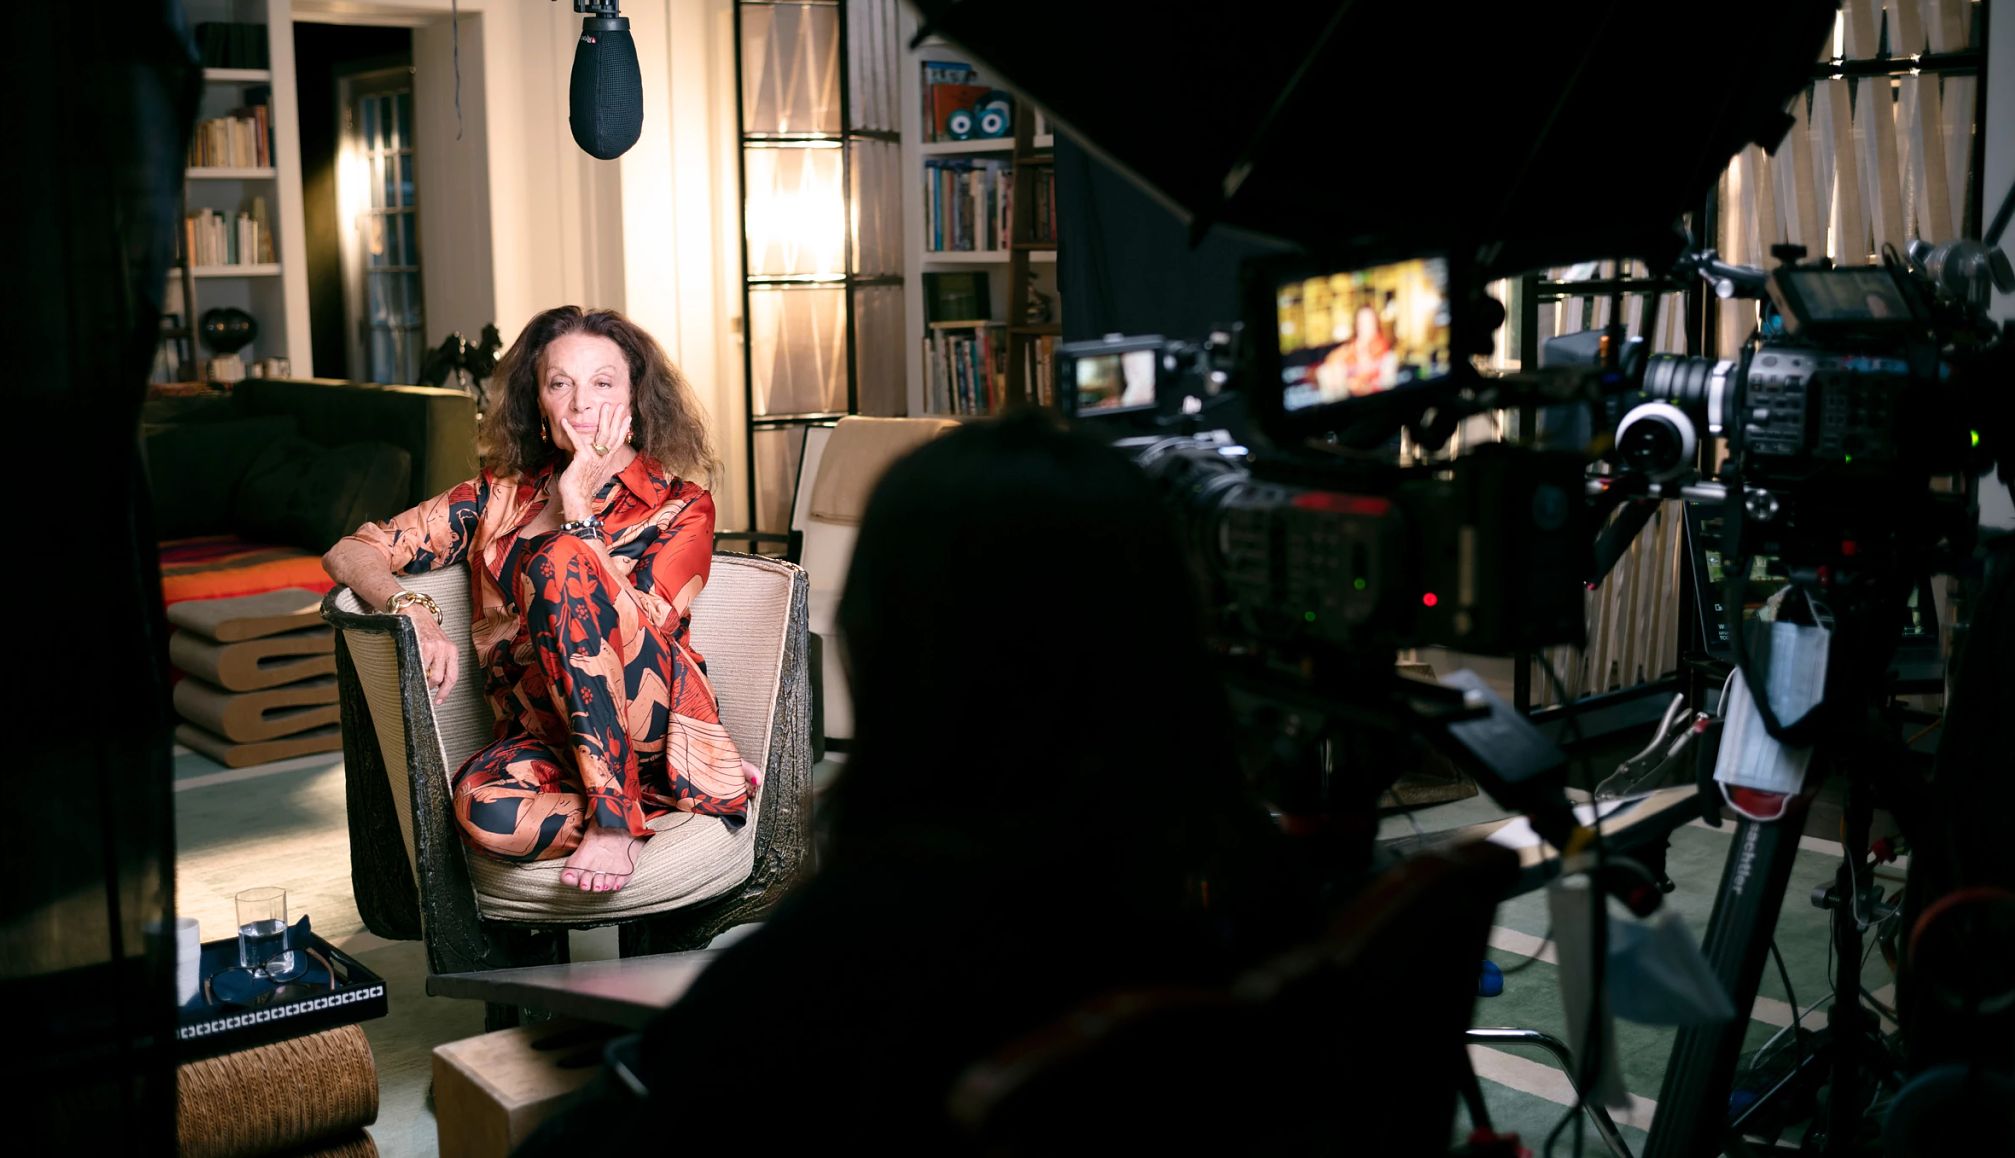 Diane von Furstenberg sitting on a chair with cameras filming her